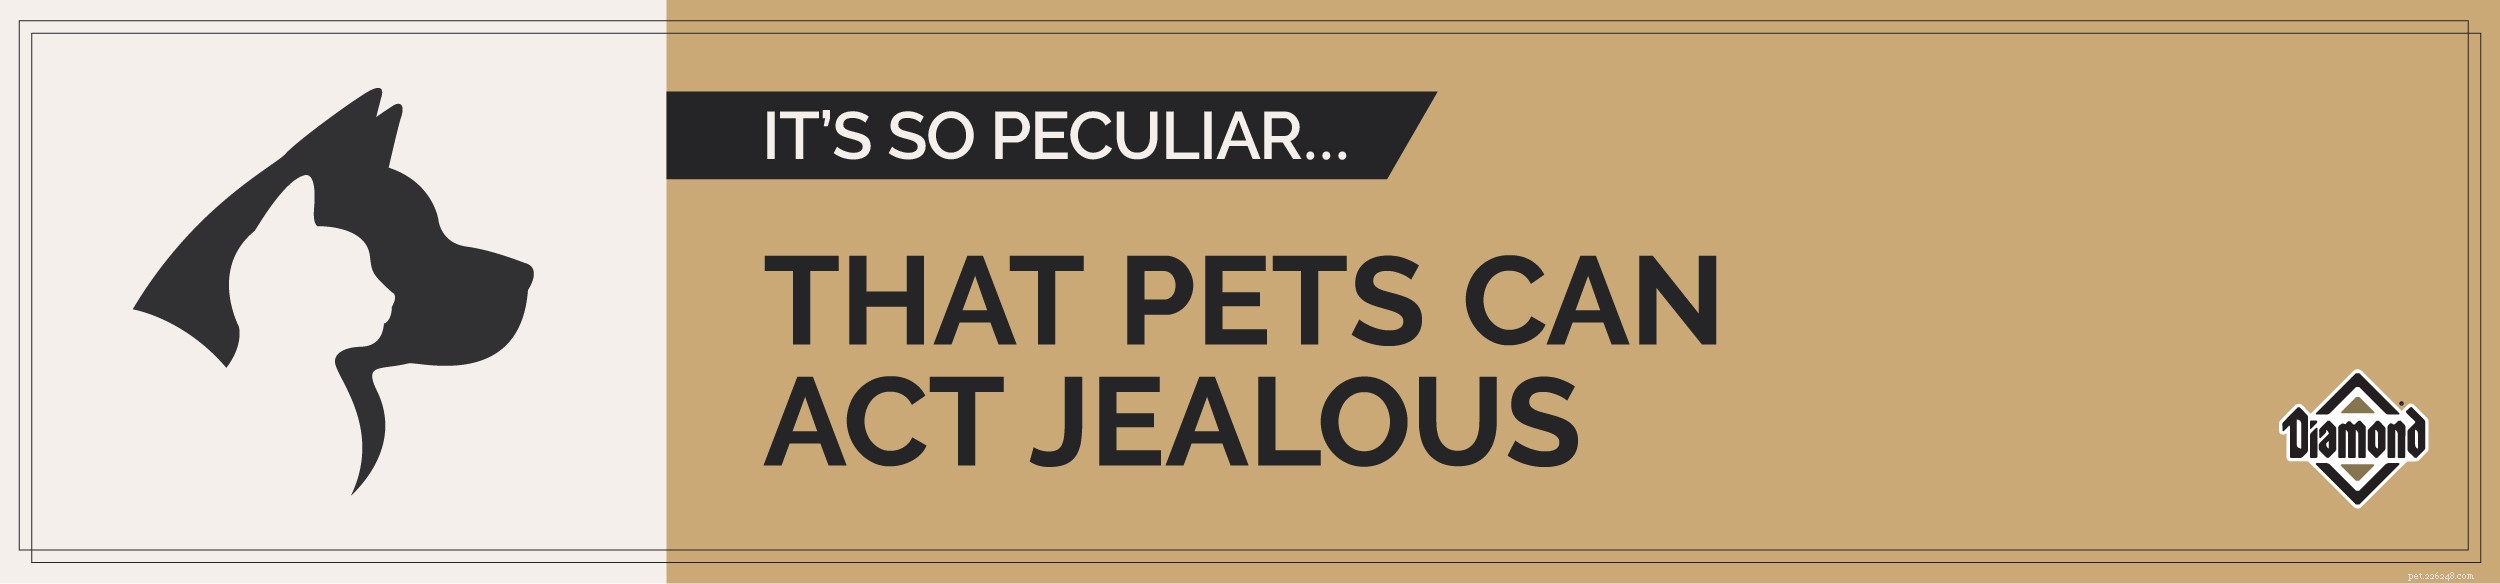 Необычные факты о домашних животных:домашние животные могут ревновать